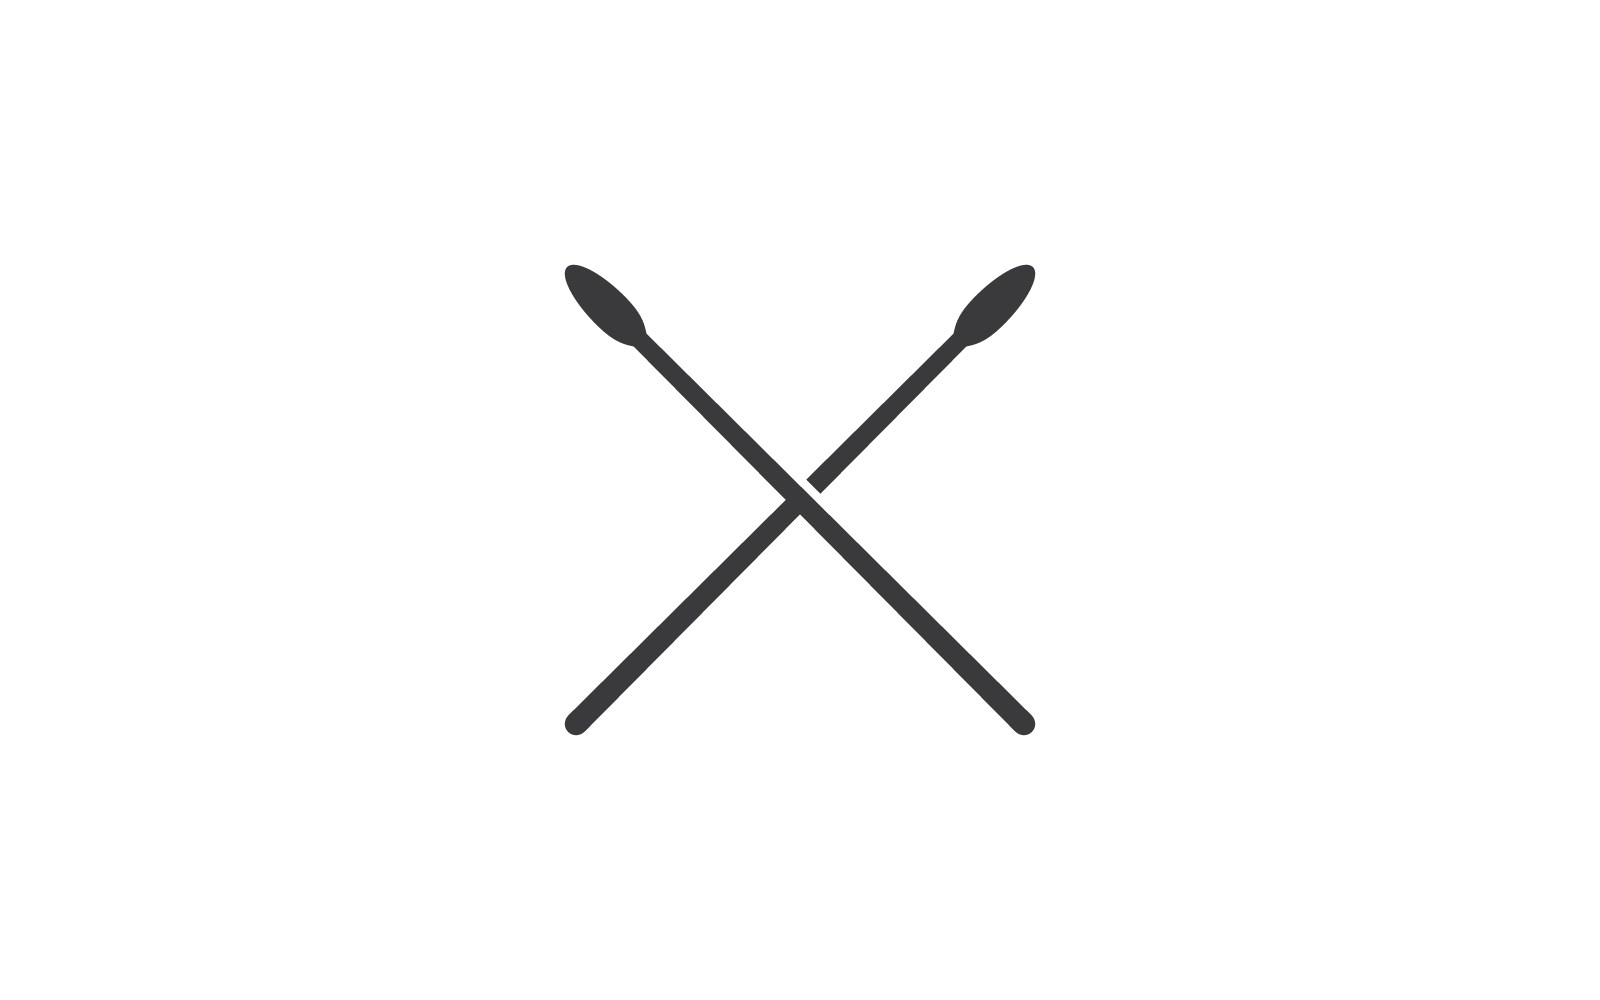 Projekt logo ilustracji wektorowych pałeczki do perkusji